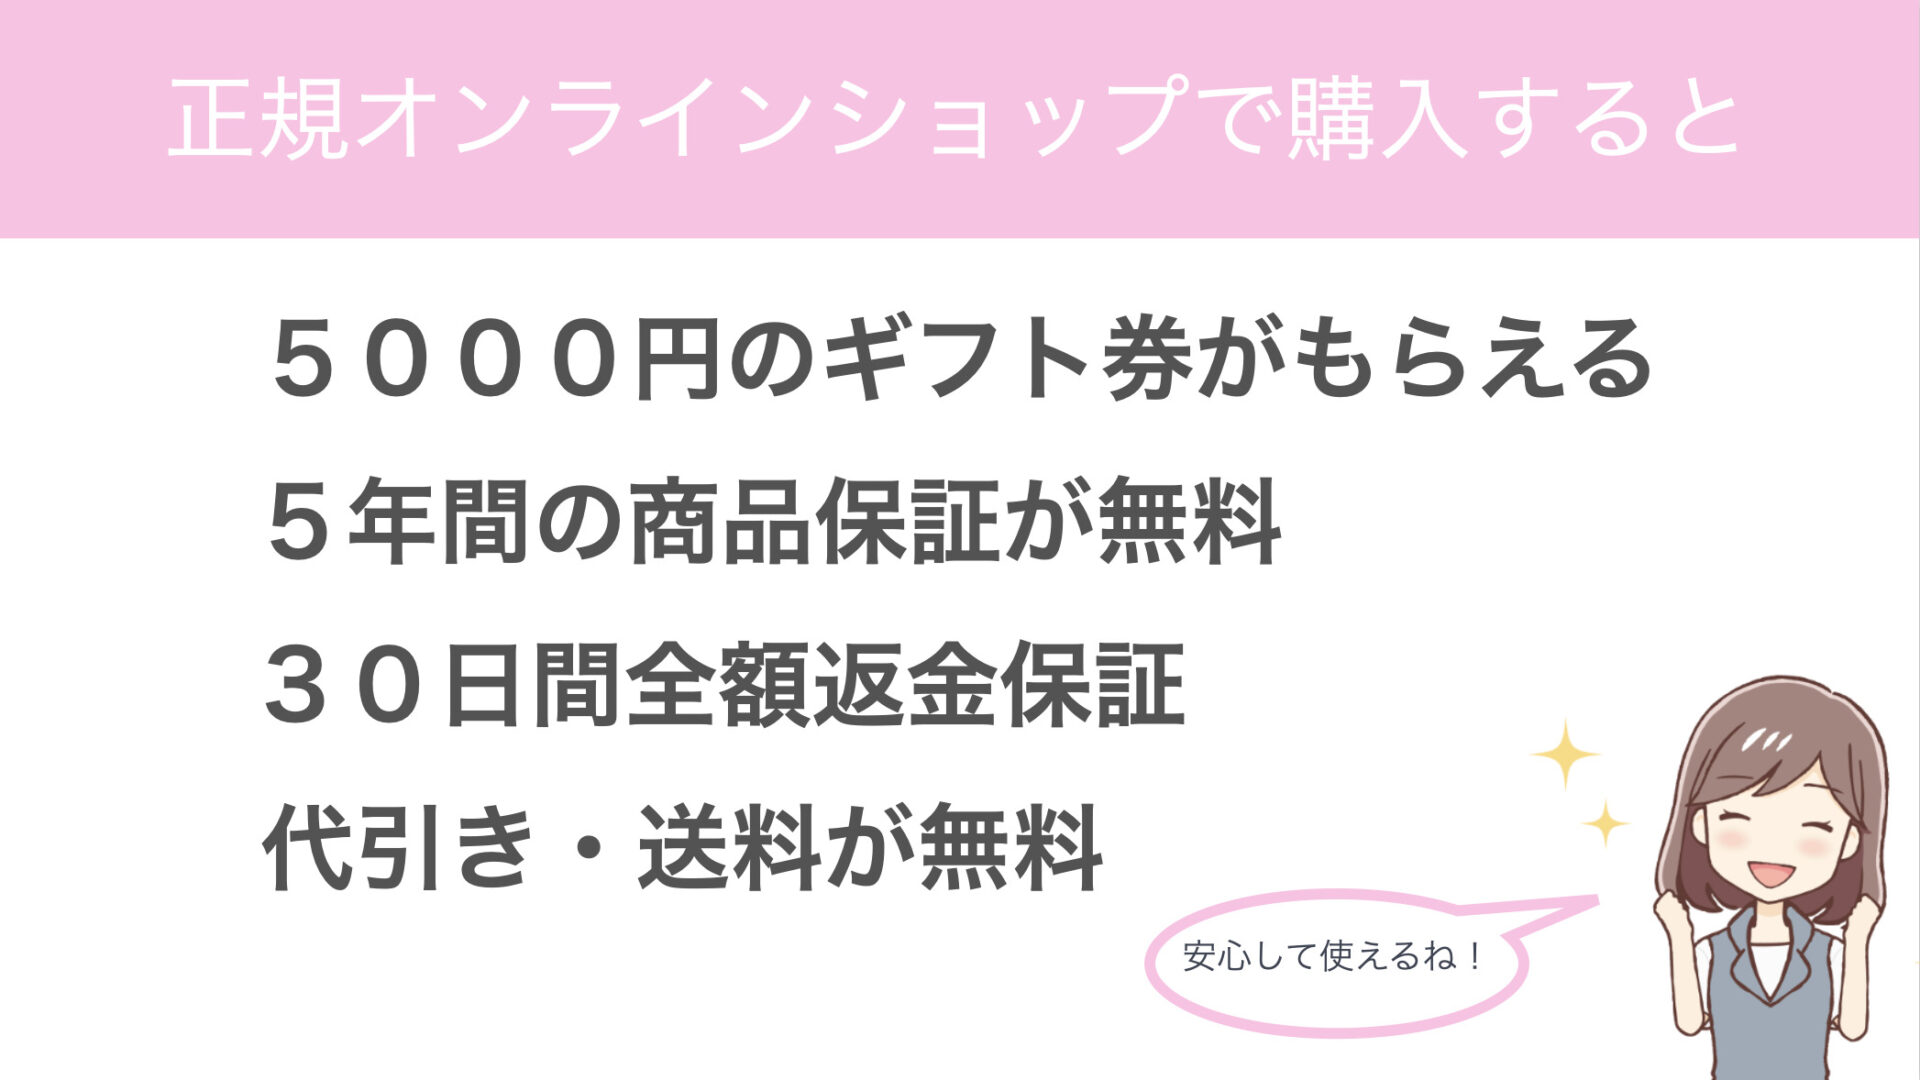 正規オンラインショップで購入すると
５０００円のギフト券がもらえる
５年間の商品保証が無料
３０日間全額返金保証
代引き・送料が無料